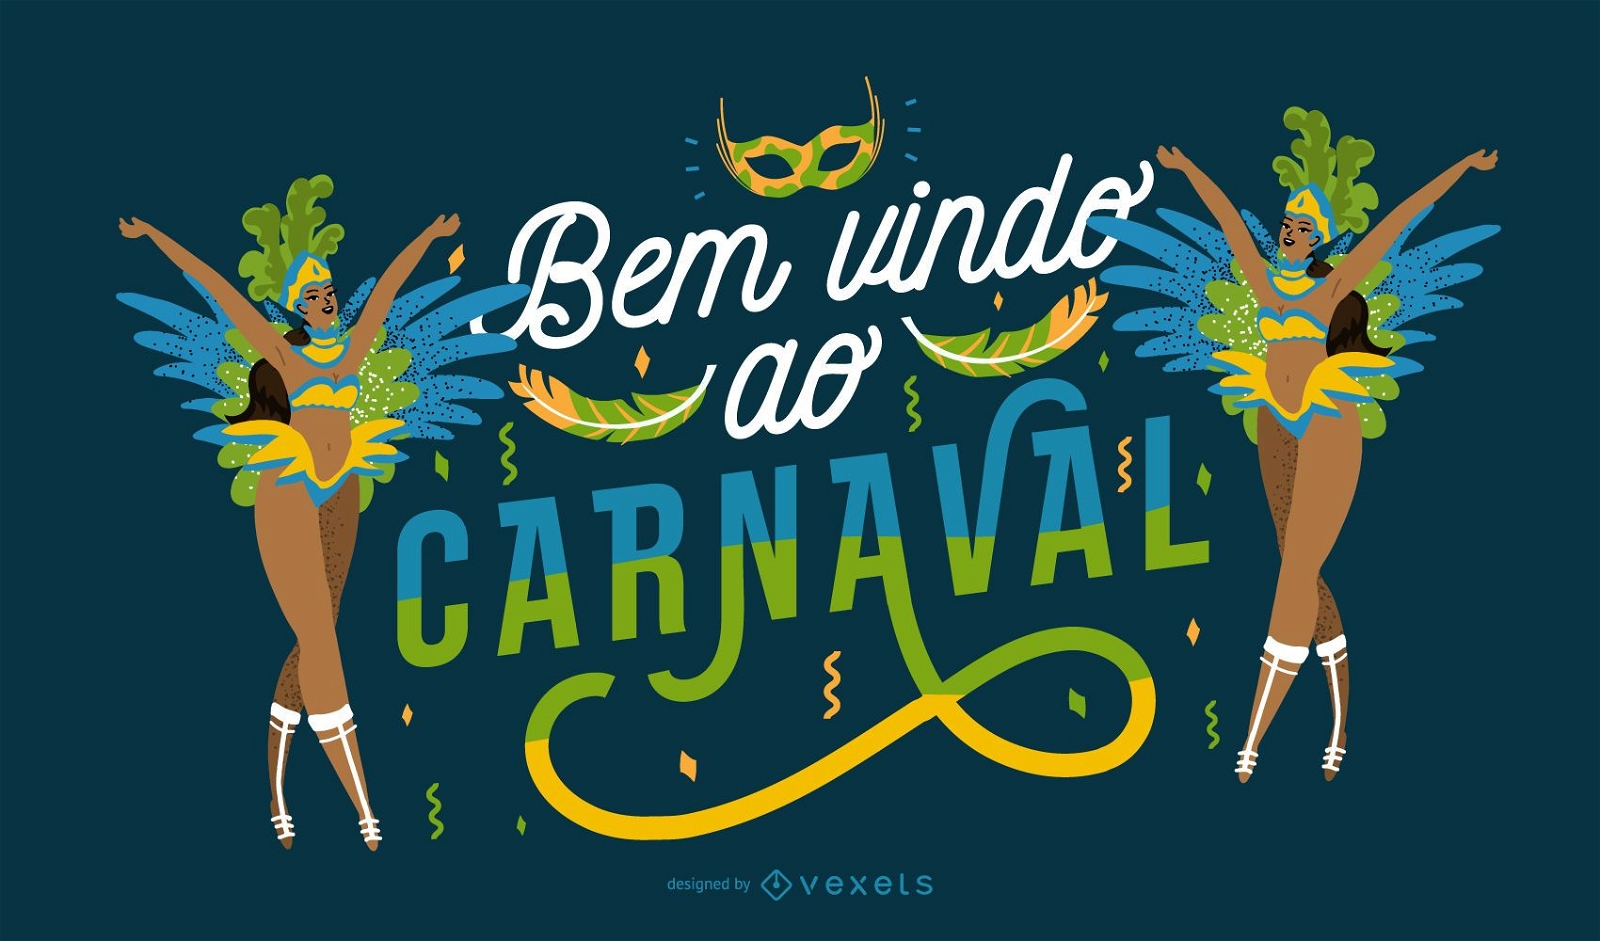 Welcome to Carnival Portuguese Quote Design